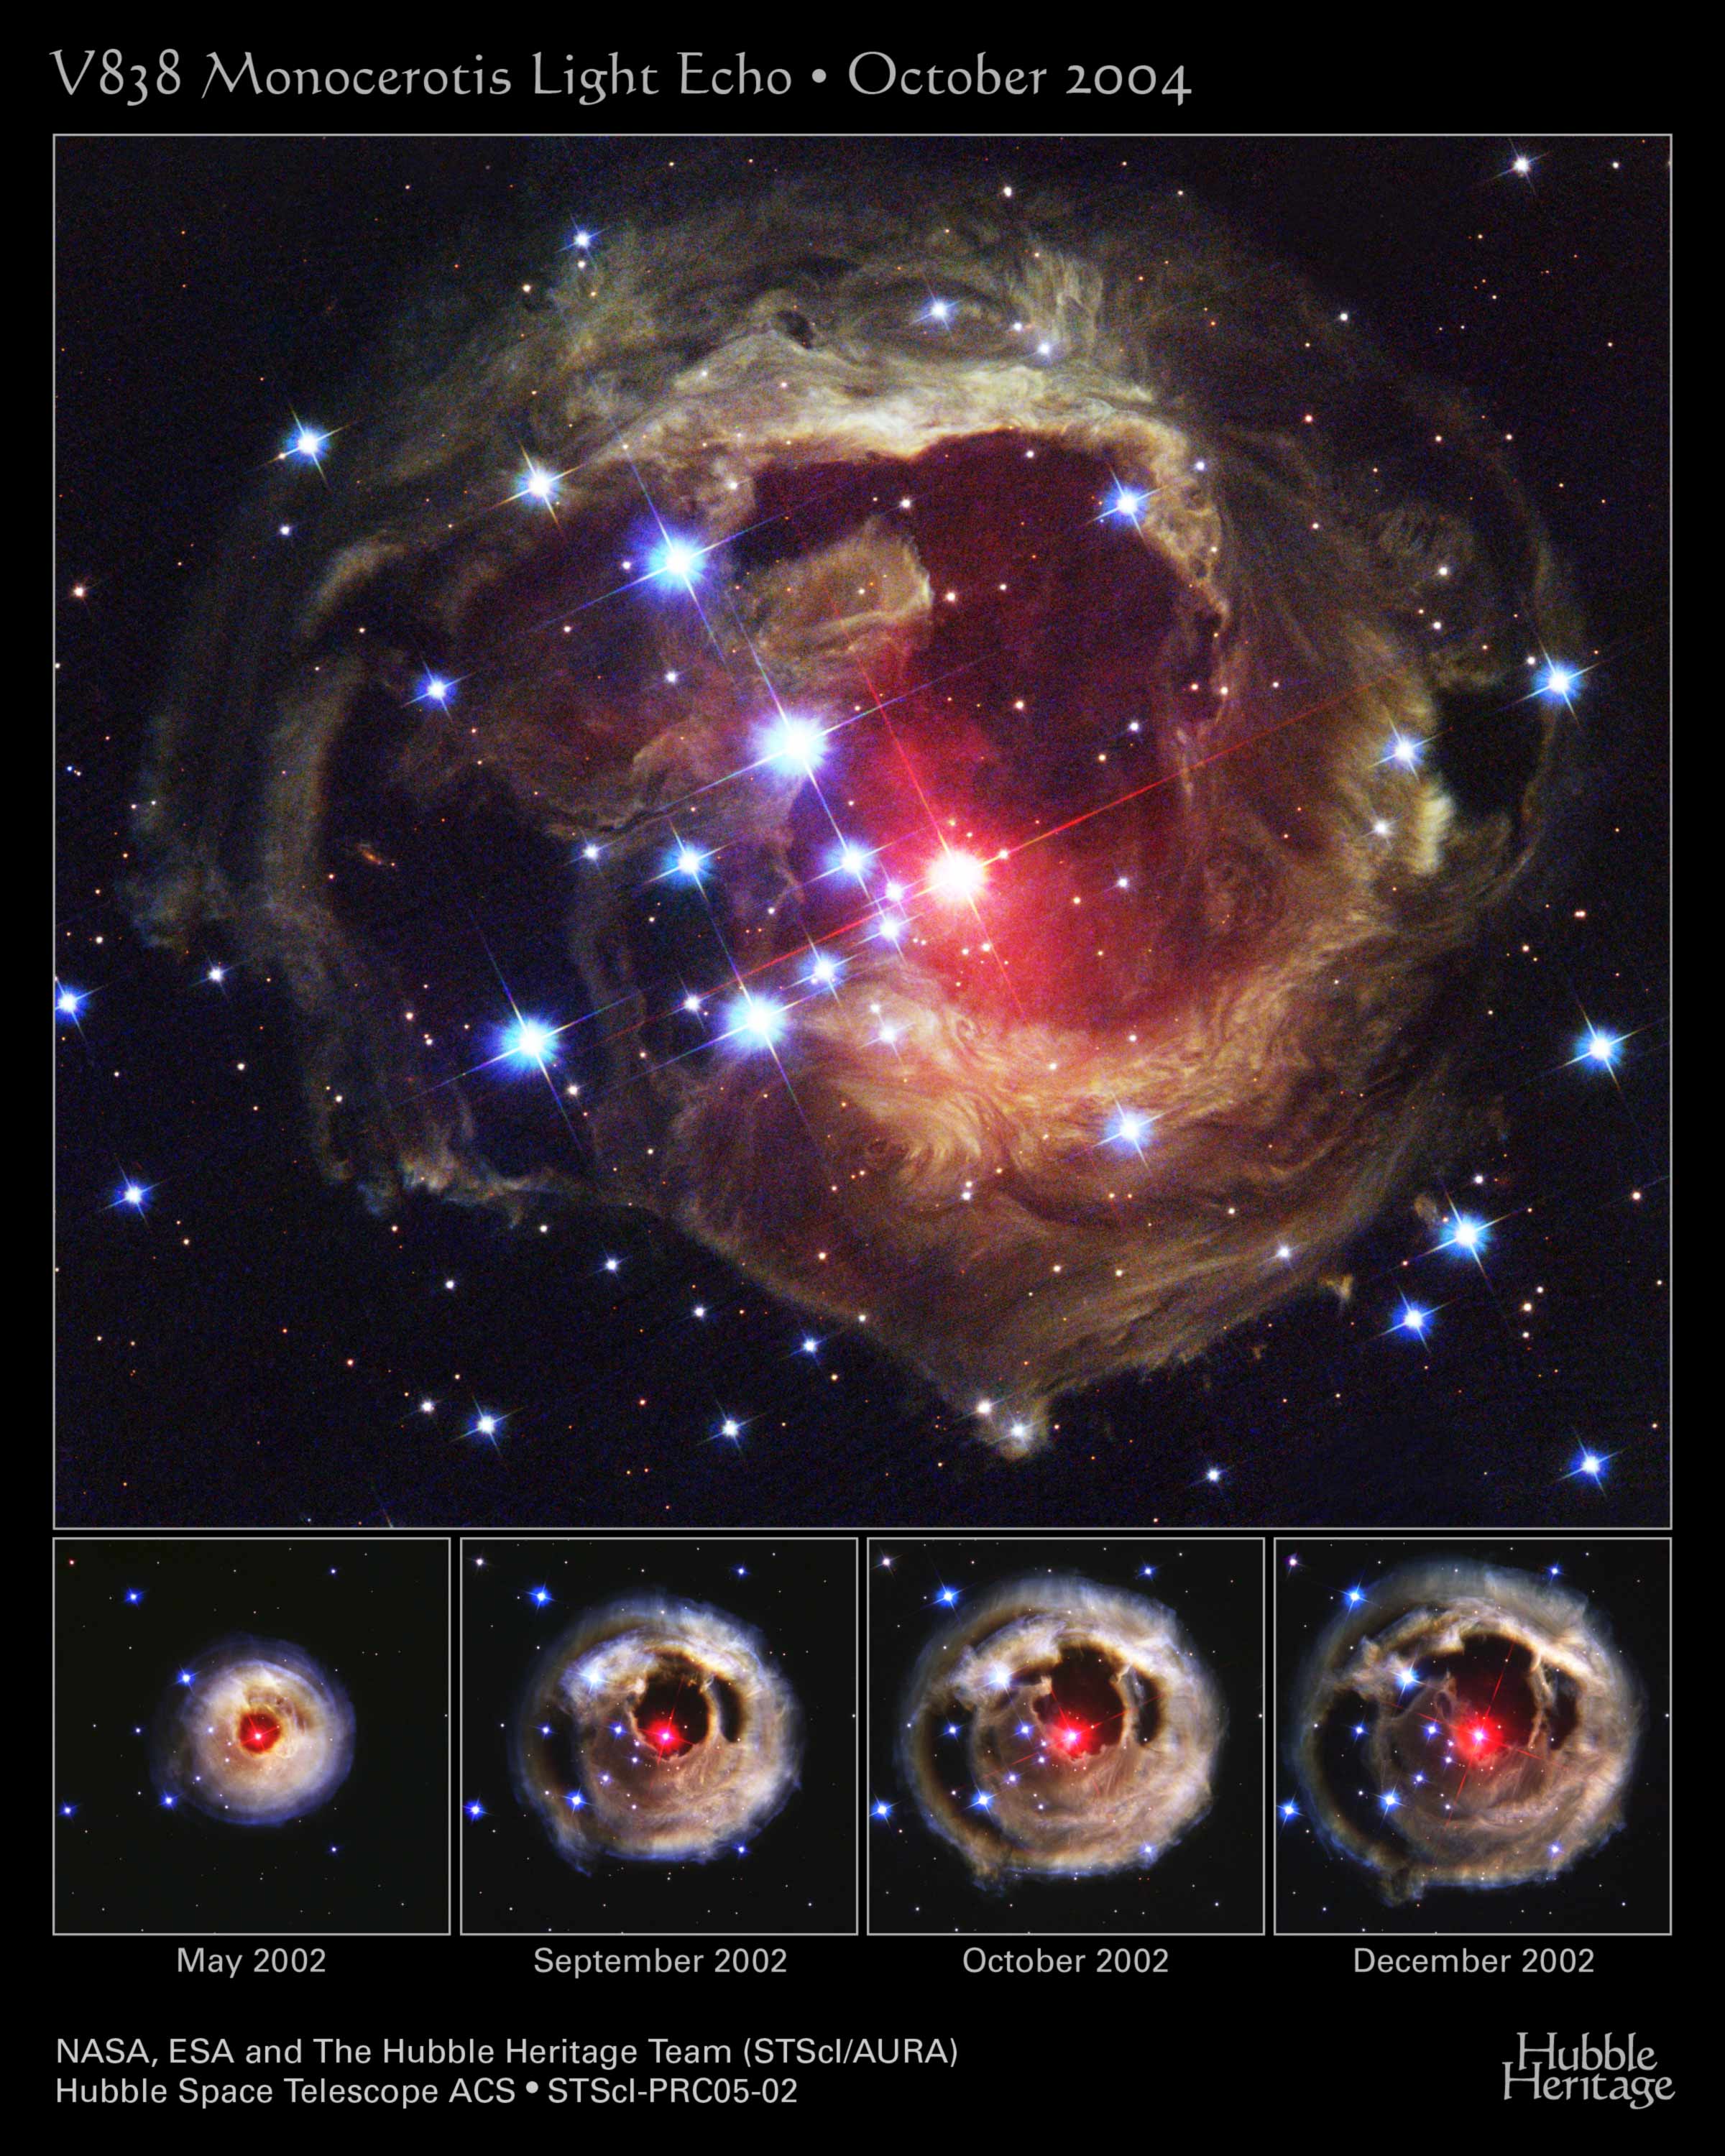 Five images of V838 Mon light echo.